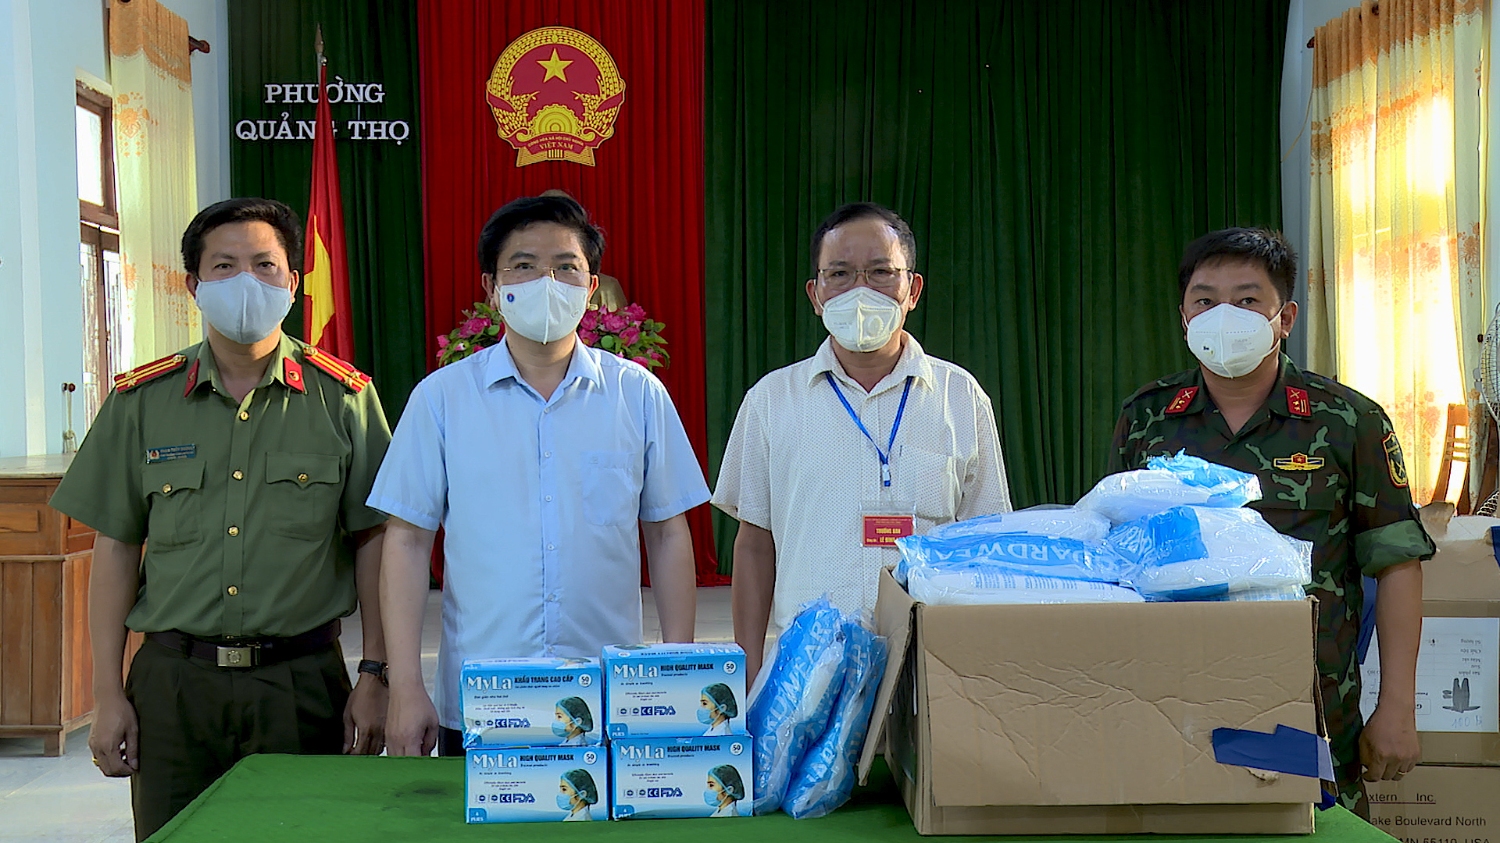 Đồng chí Bí thư tặng khẩu trang, kính chống giọt bắn, quần áo bảo hộ cho các lực lượng làm nhiệm vụ tại phường Quảng Thọ